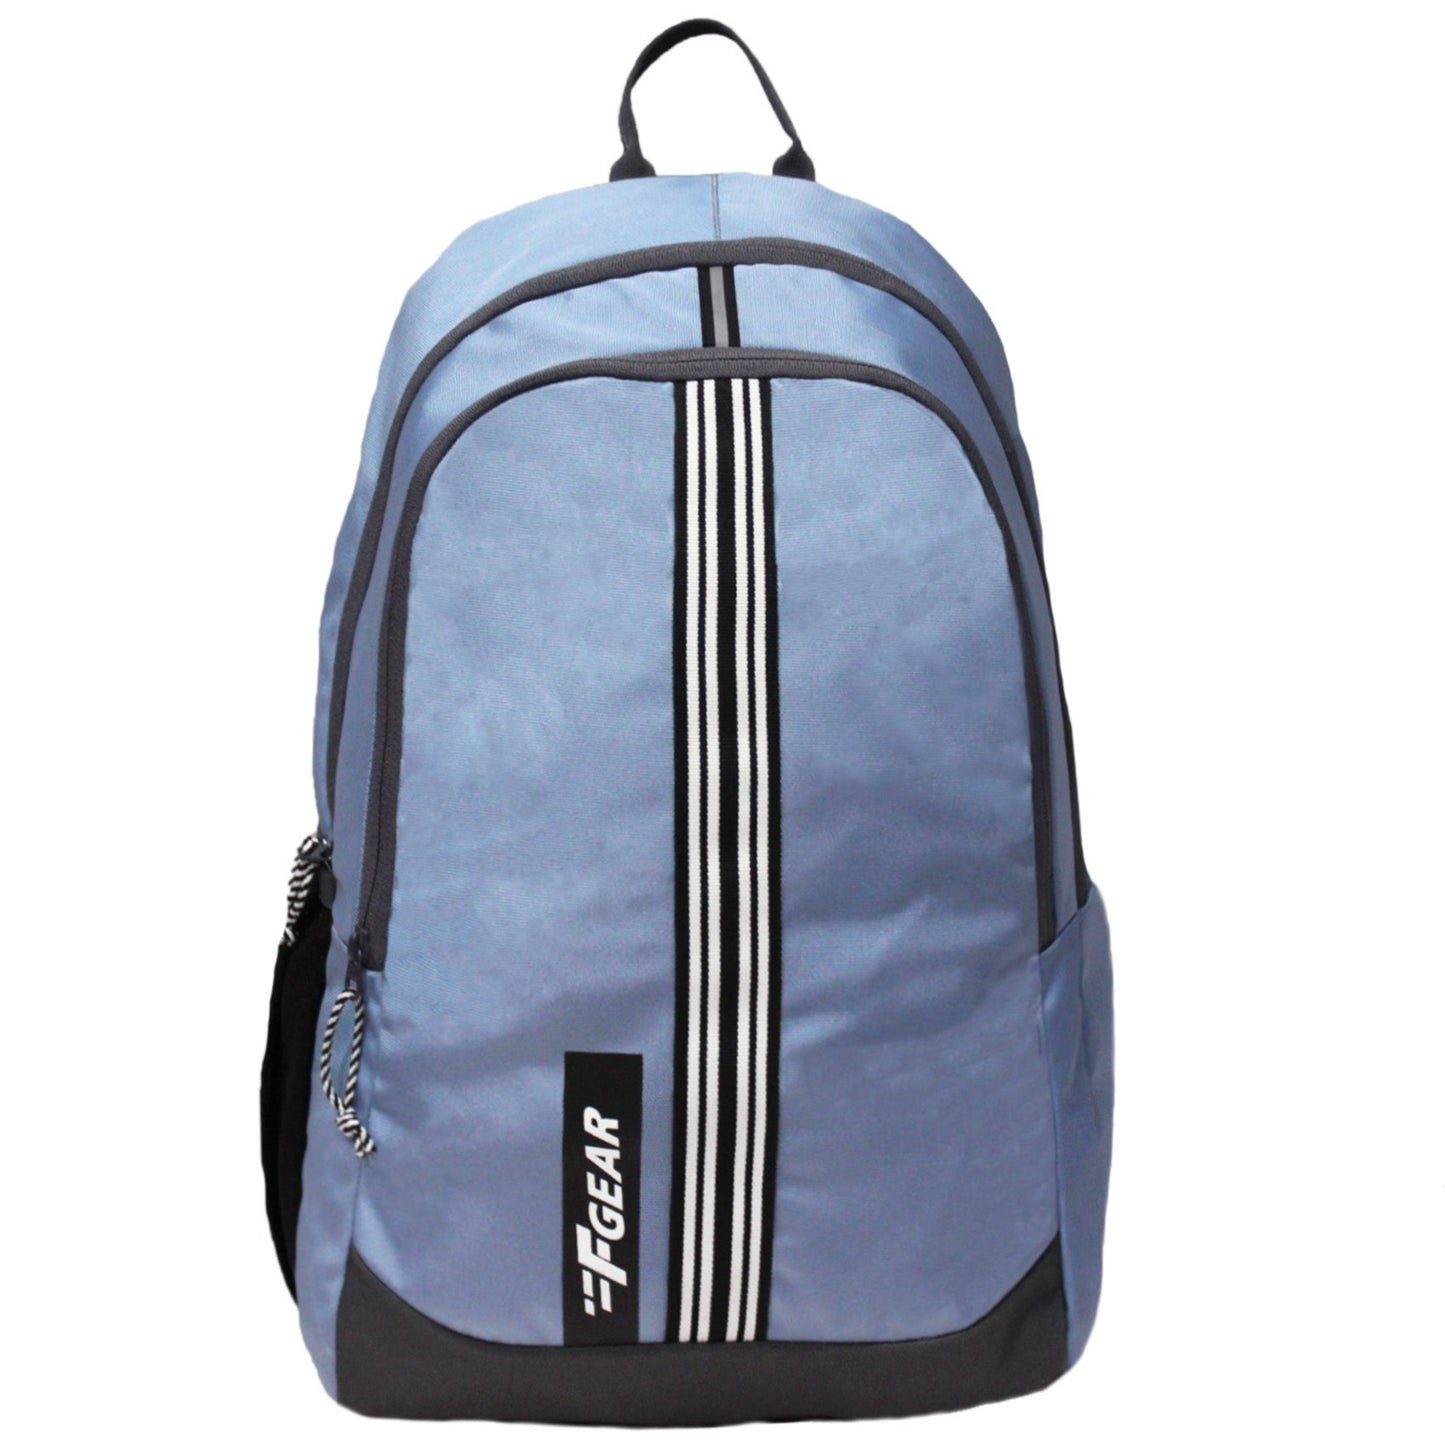 Salient 27L Lavender Backpack